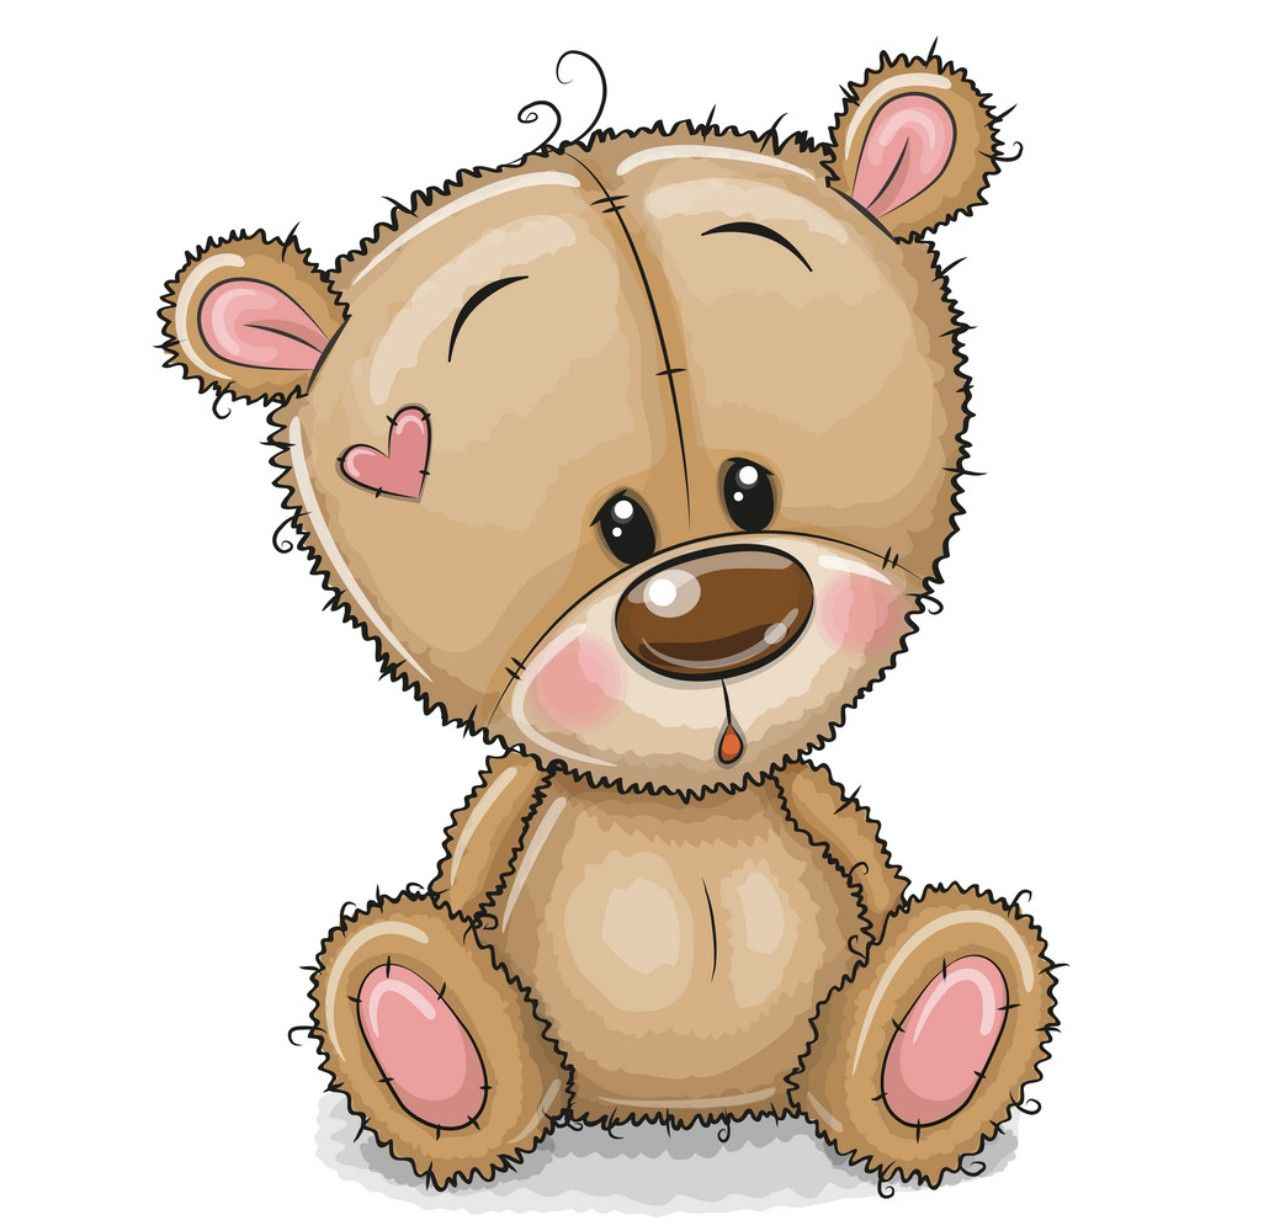 Cute Teddy Bear Drawing Beautiful Image